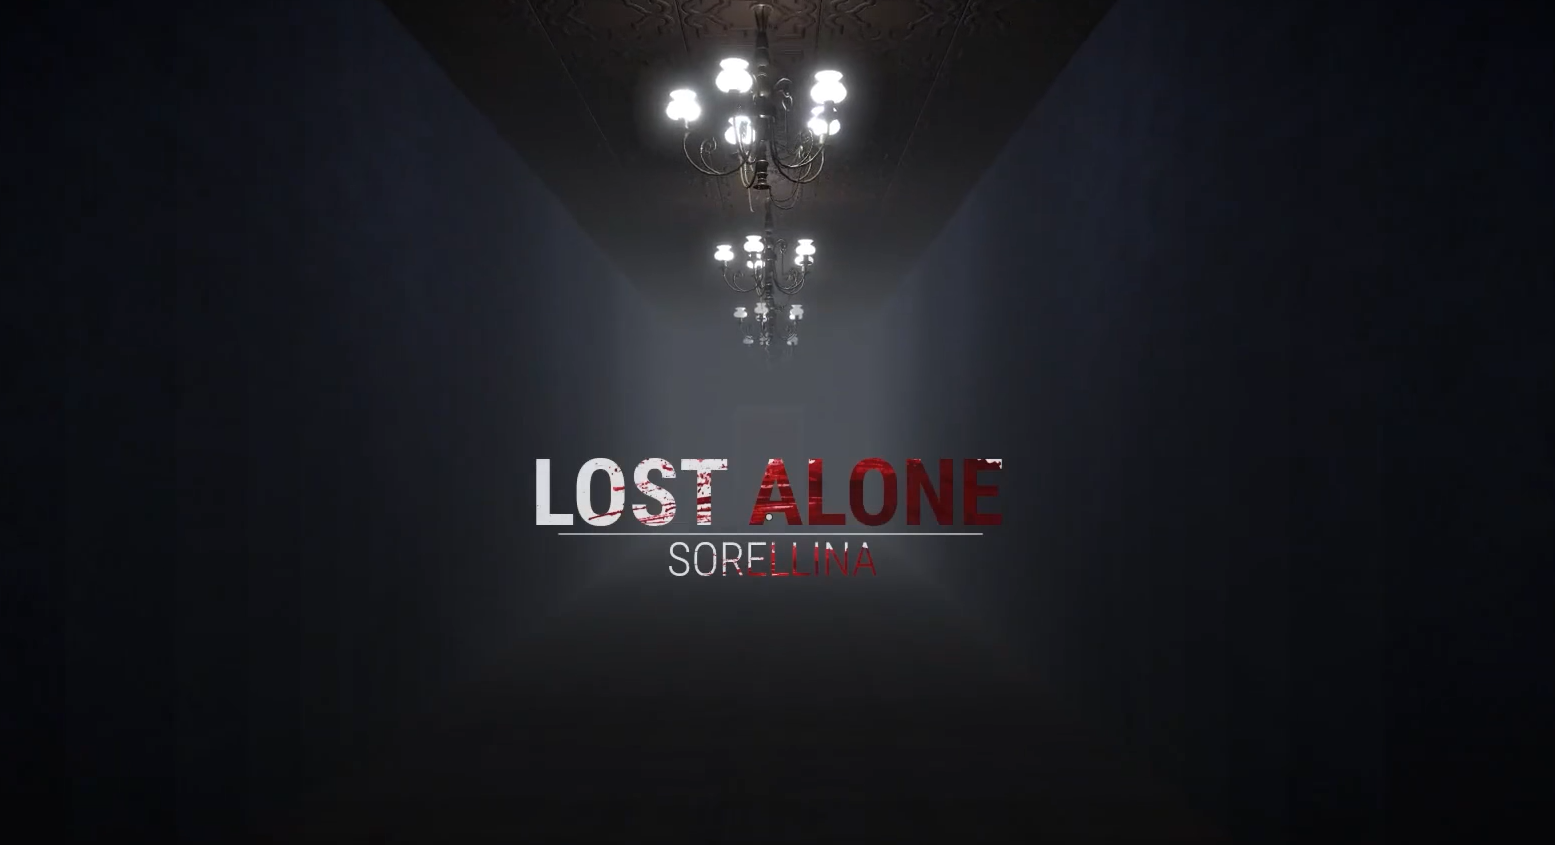 Lost Alone EP.1 - Sorellina Free Download